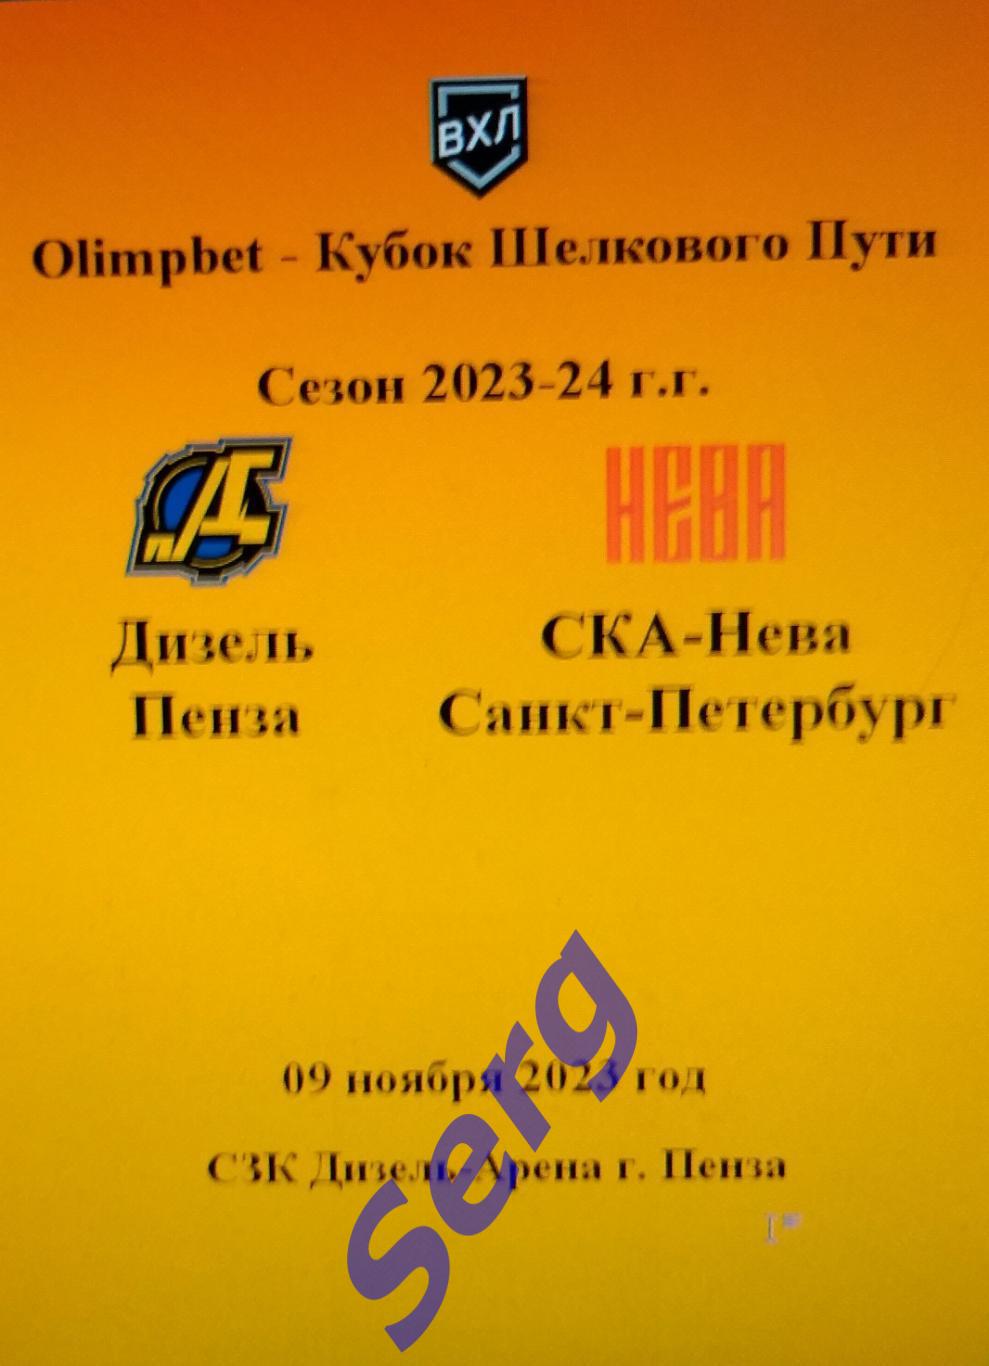 Дизель Пенза - СКА-Нева Санкт-Петербург - 09 ноября 2023 год